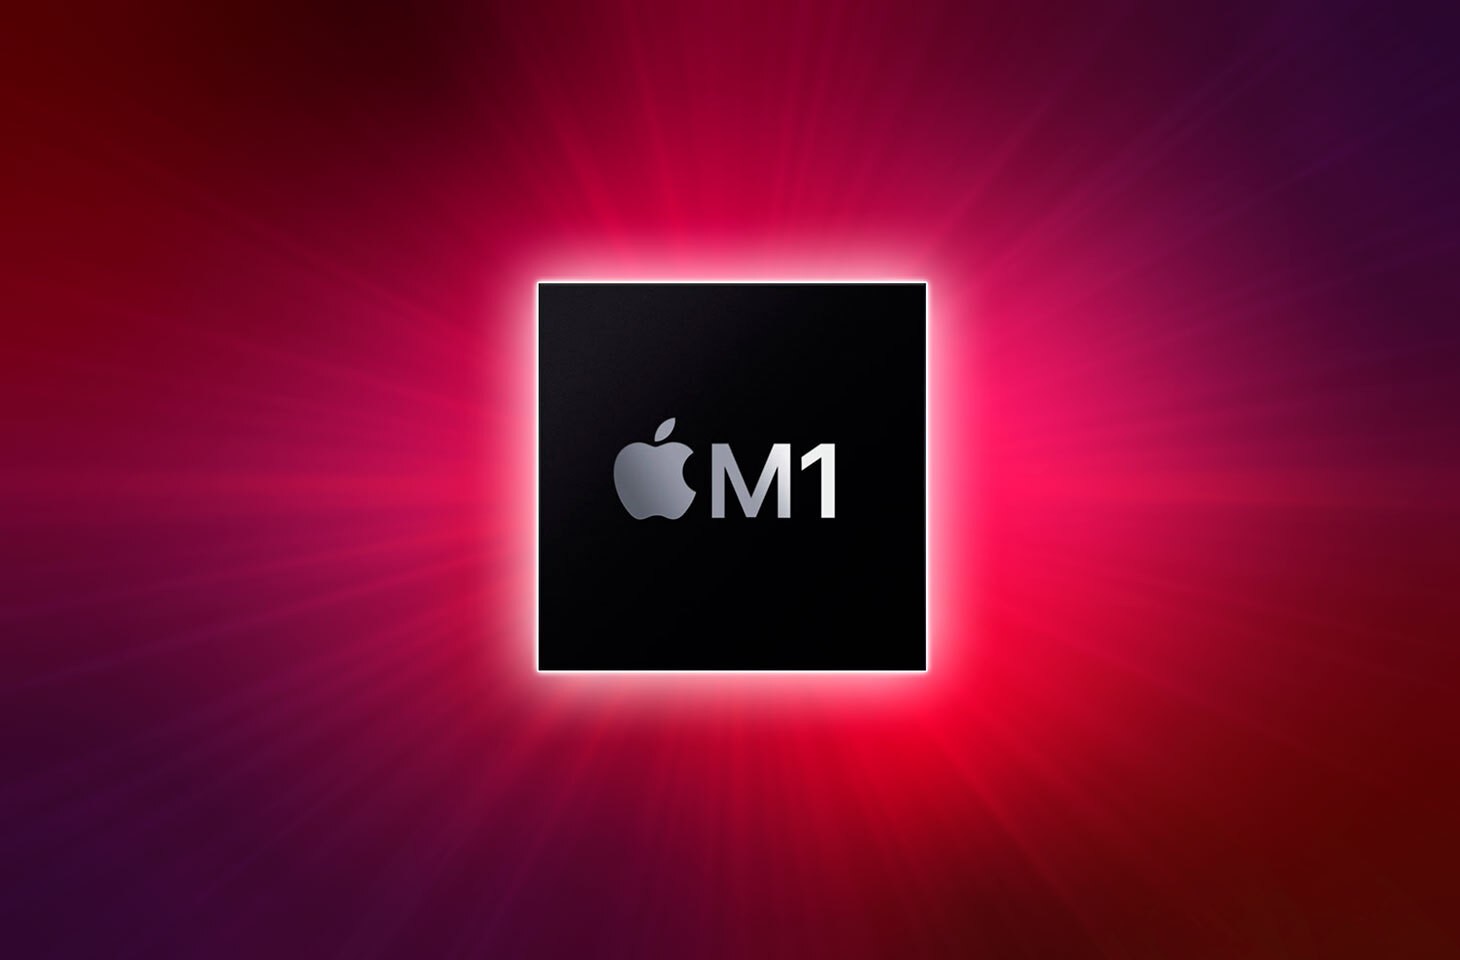 O Chip M1 Apple é mesmo isso tudo? Entenda mais sobre ele